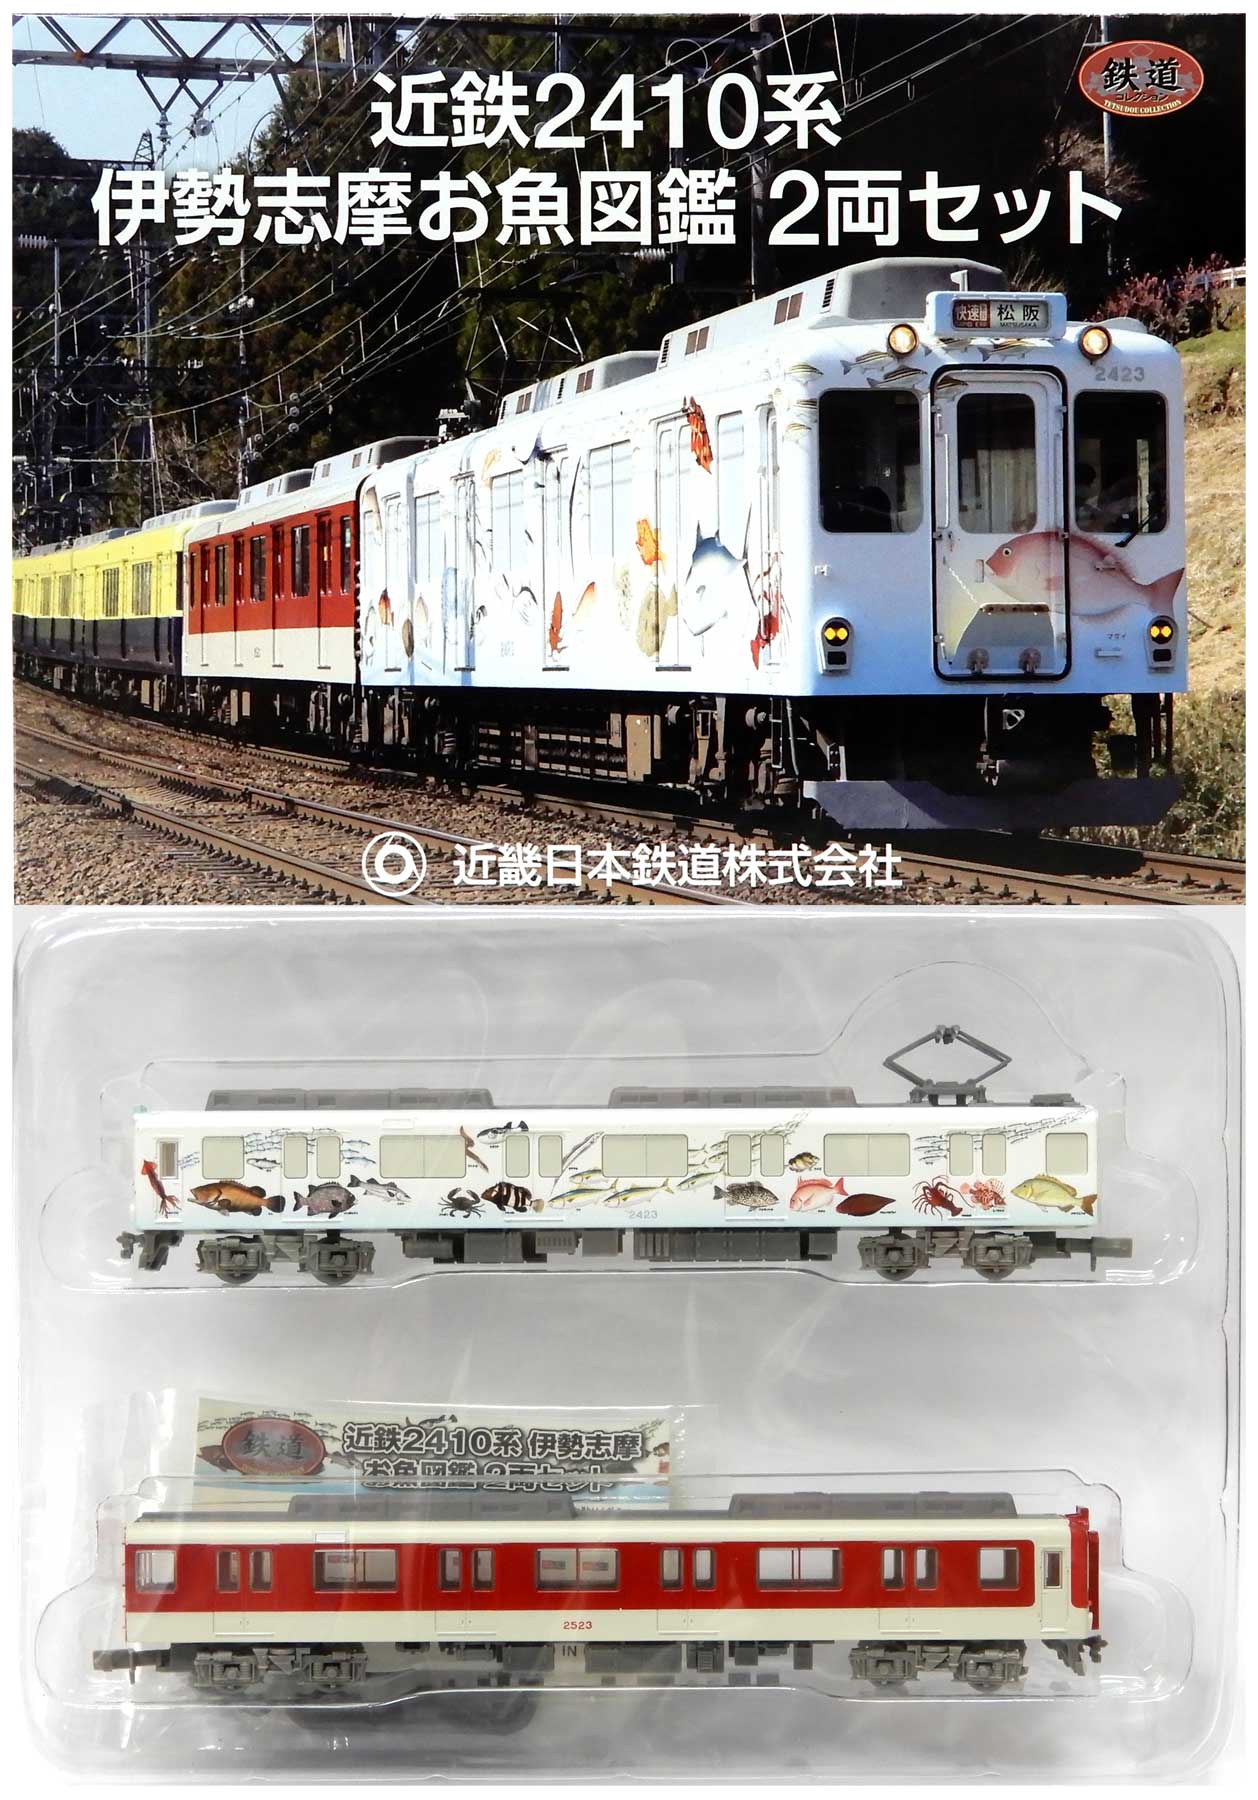 公式]鉄道模型((K639-K640) 鉄道コレクション 近鉄 2410系 伊勢志摩お 